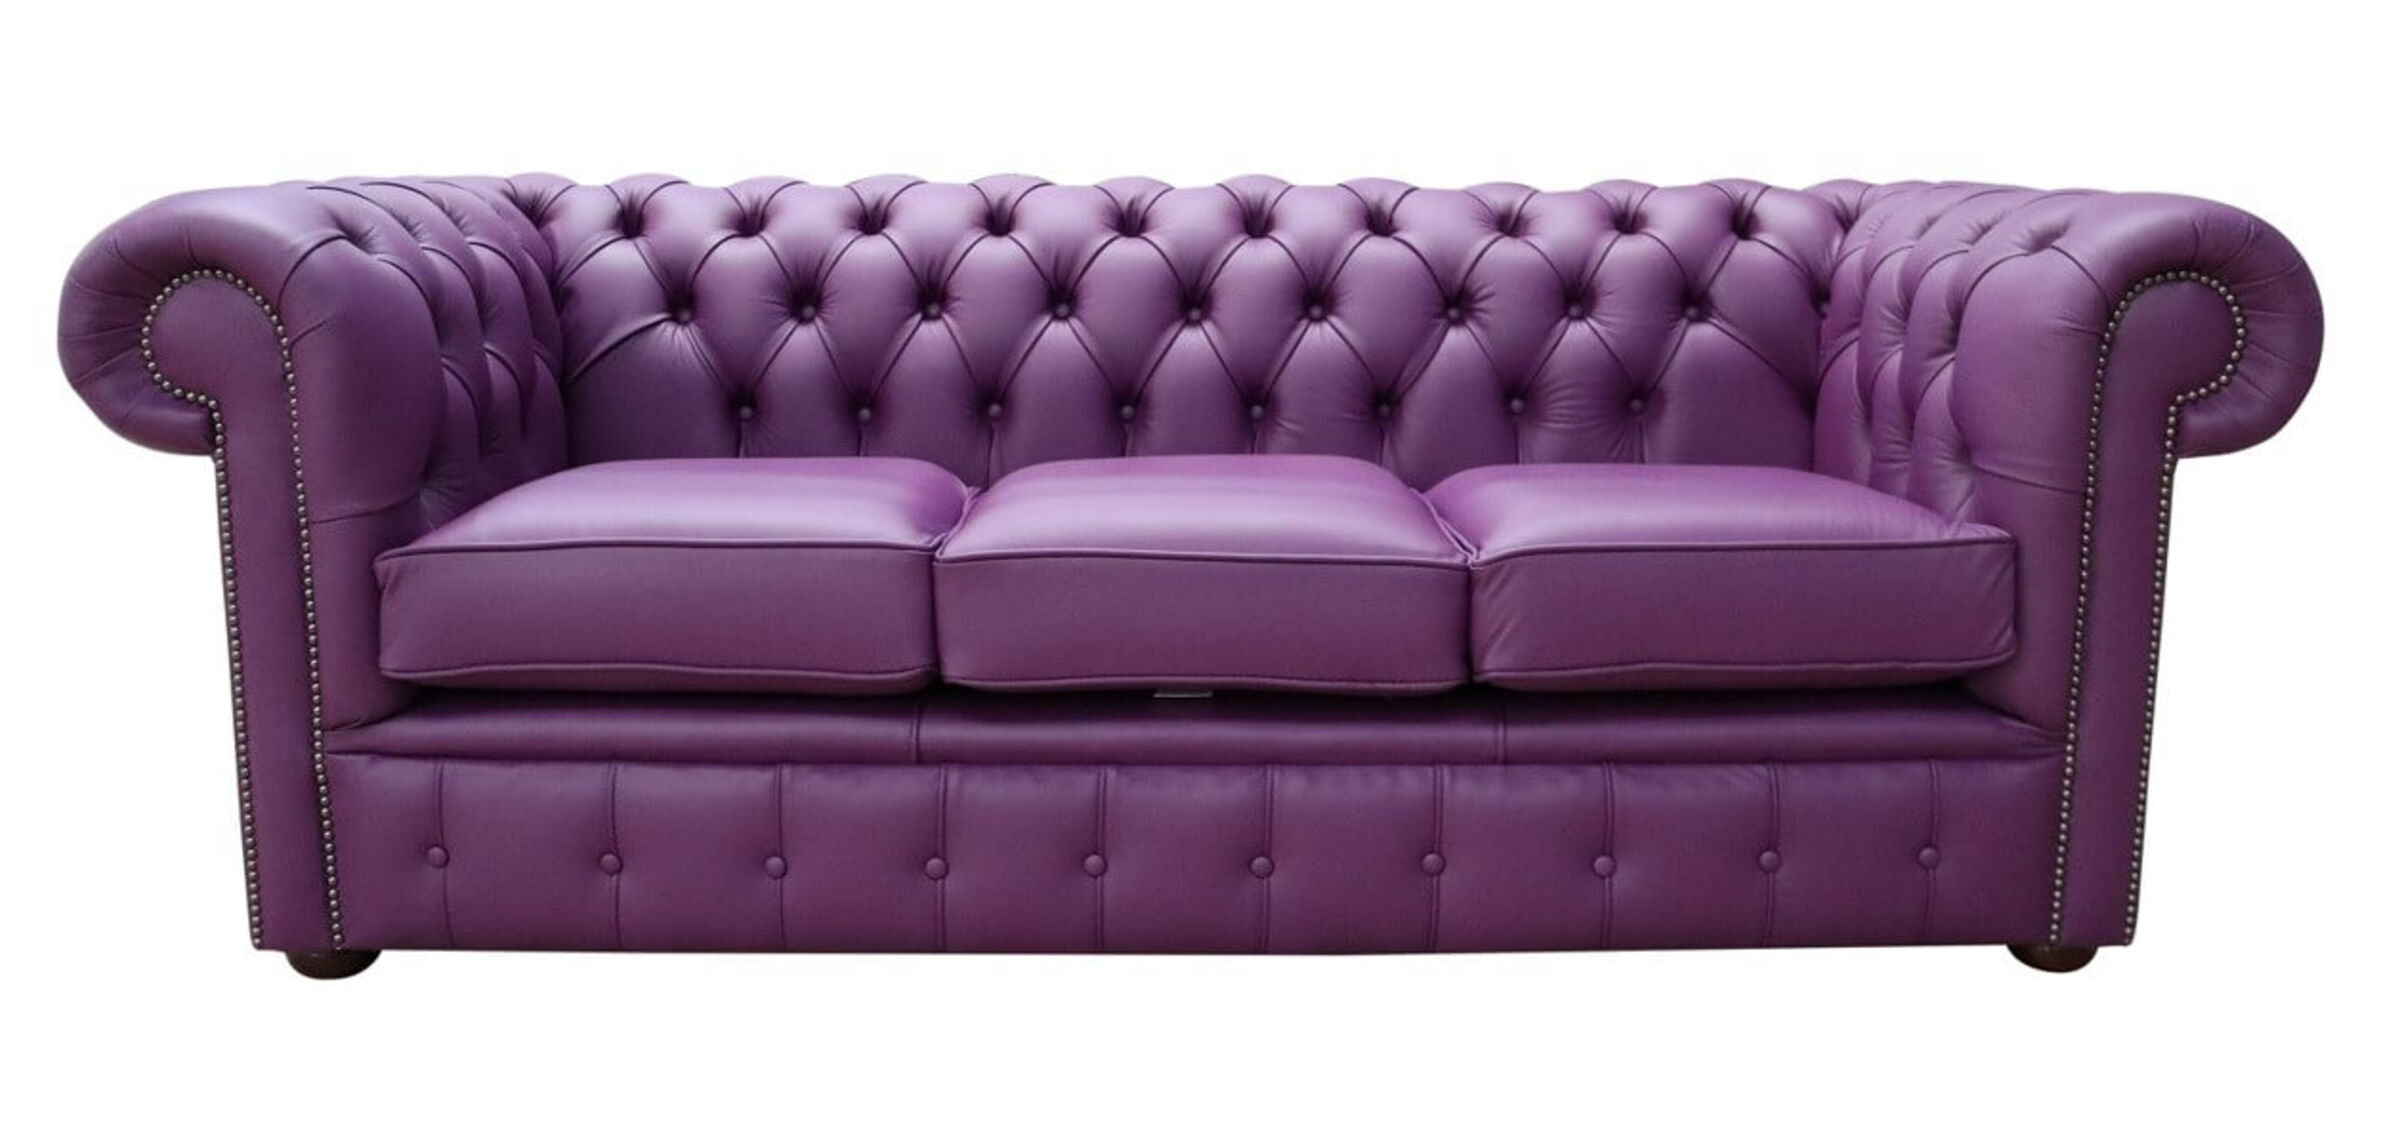 purple leather sofa harveys